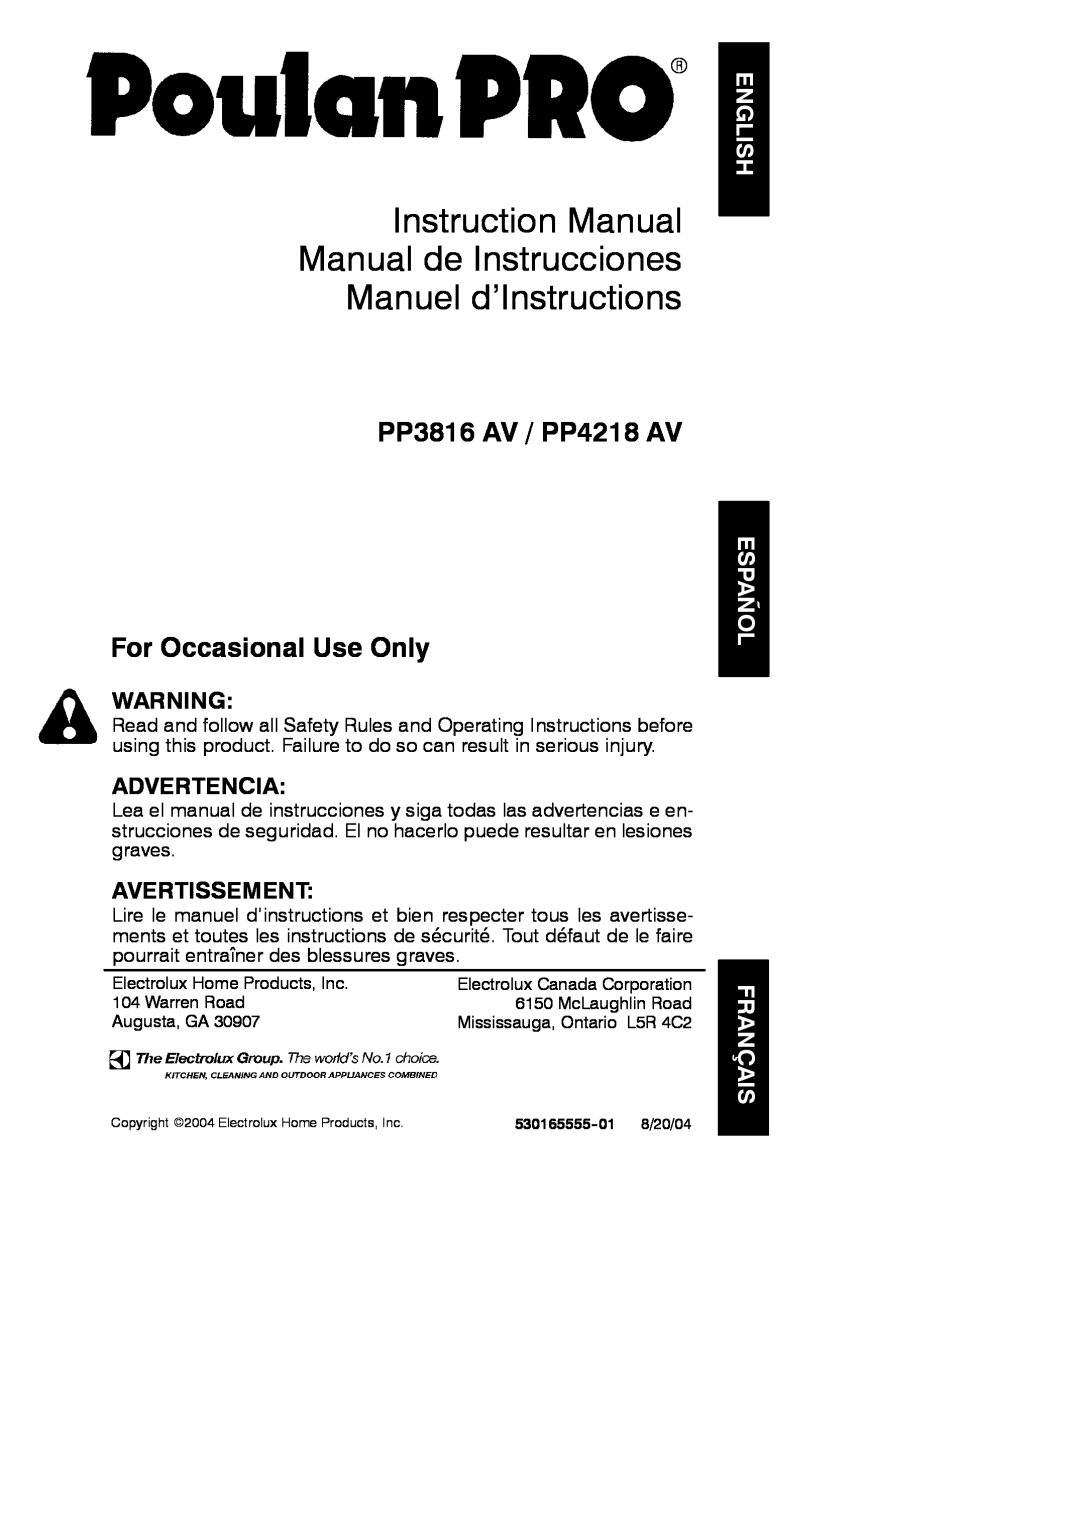 Poulan 530165555-01 instruction manual English, Español Français, PP3816 AV / PP4218 AV For Occasional Use Only 